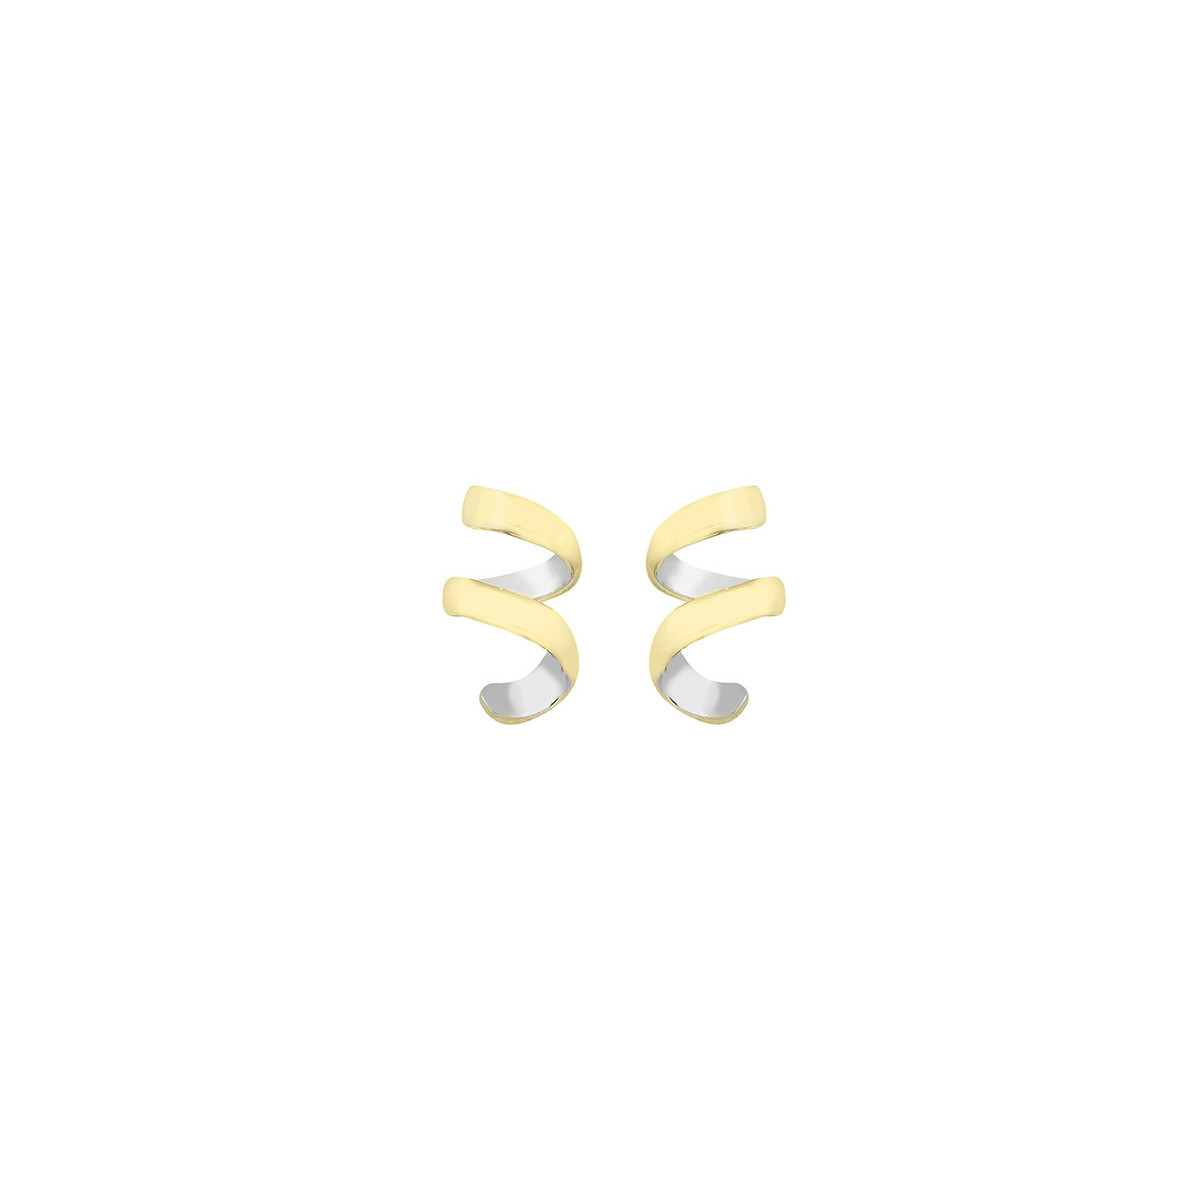 CURLS Earrings in Silver. 18k Gold Vermeil